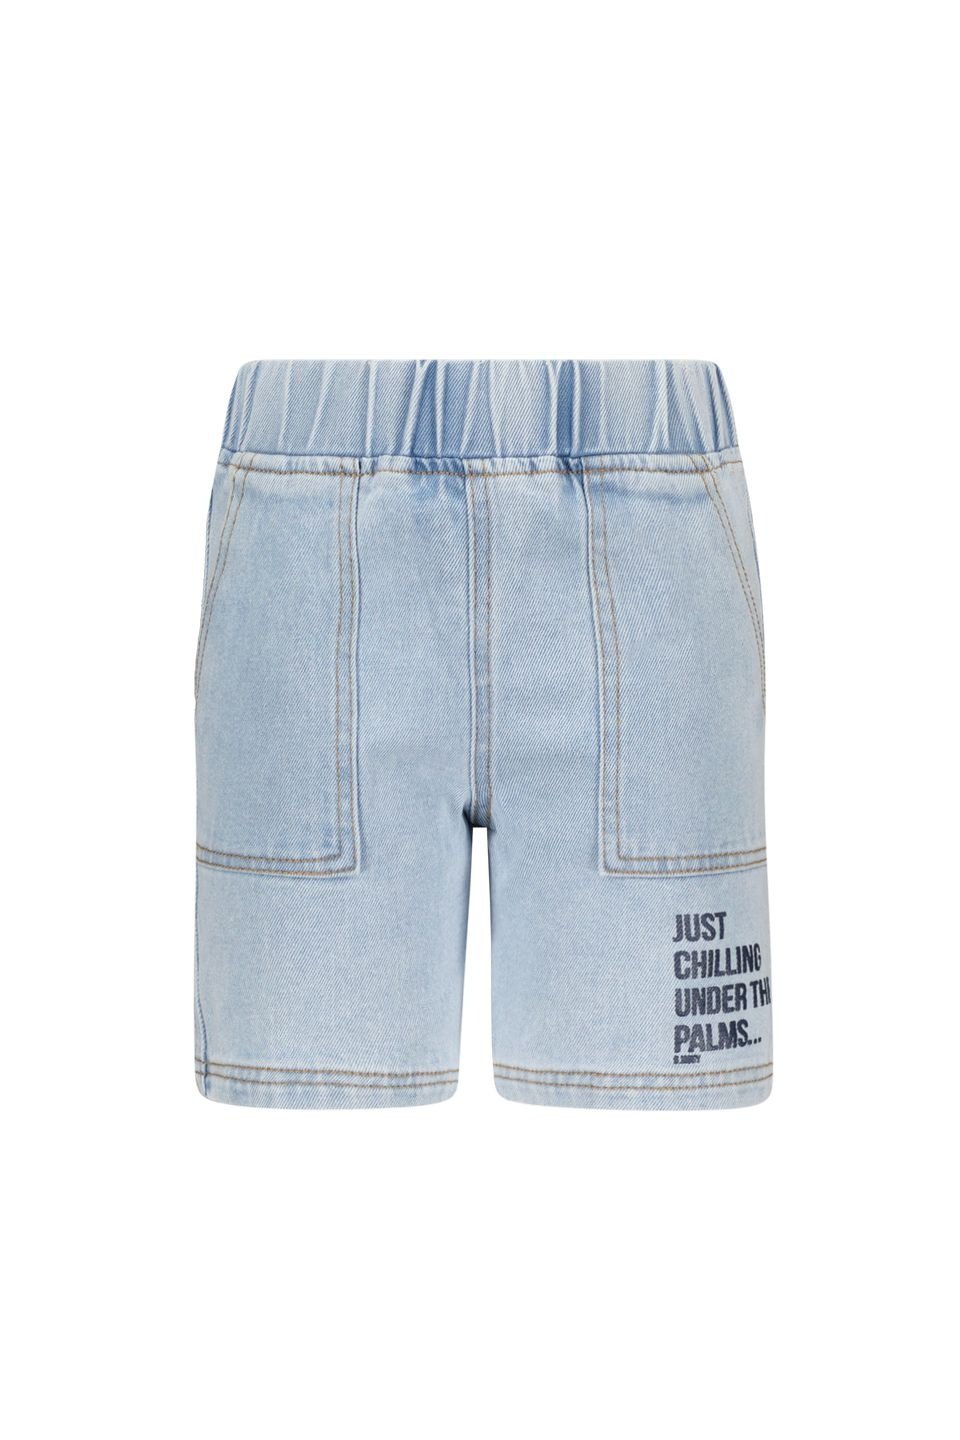 B.Nosy Jongens jeans short - Melle - Vivid denim